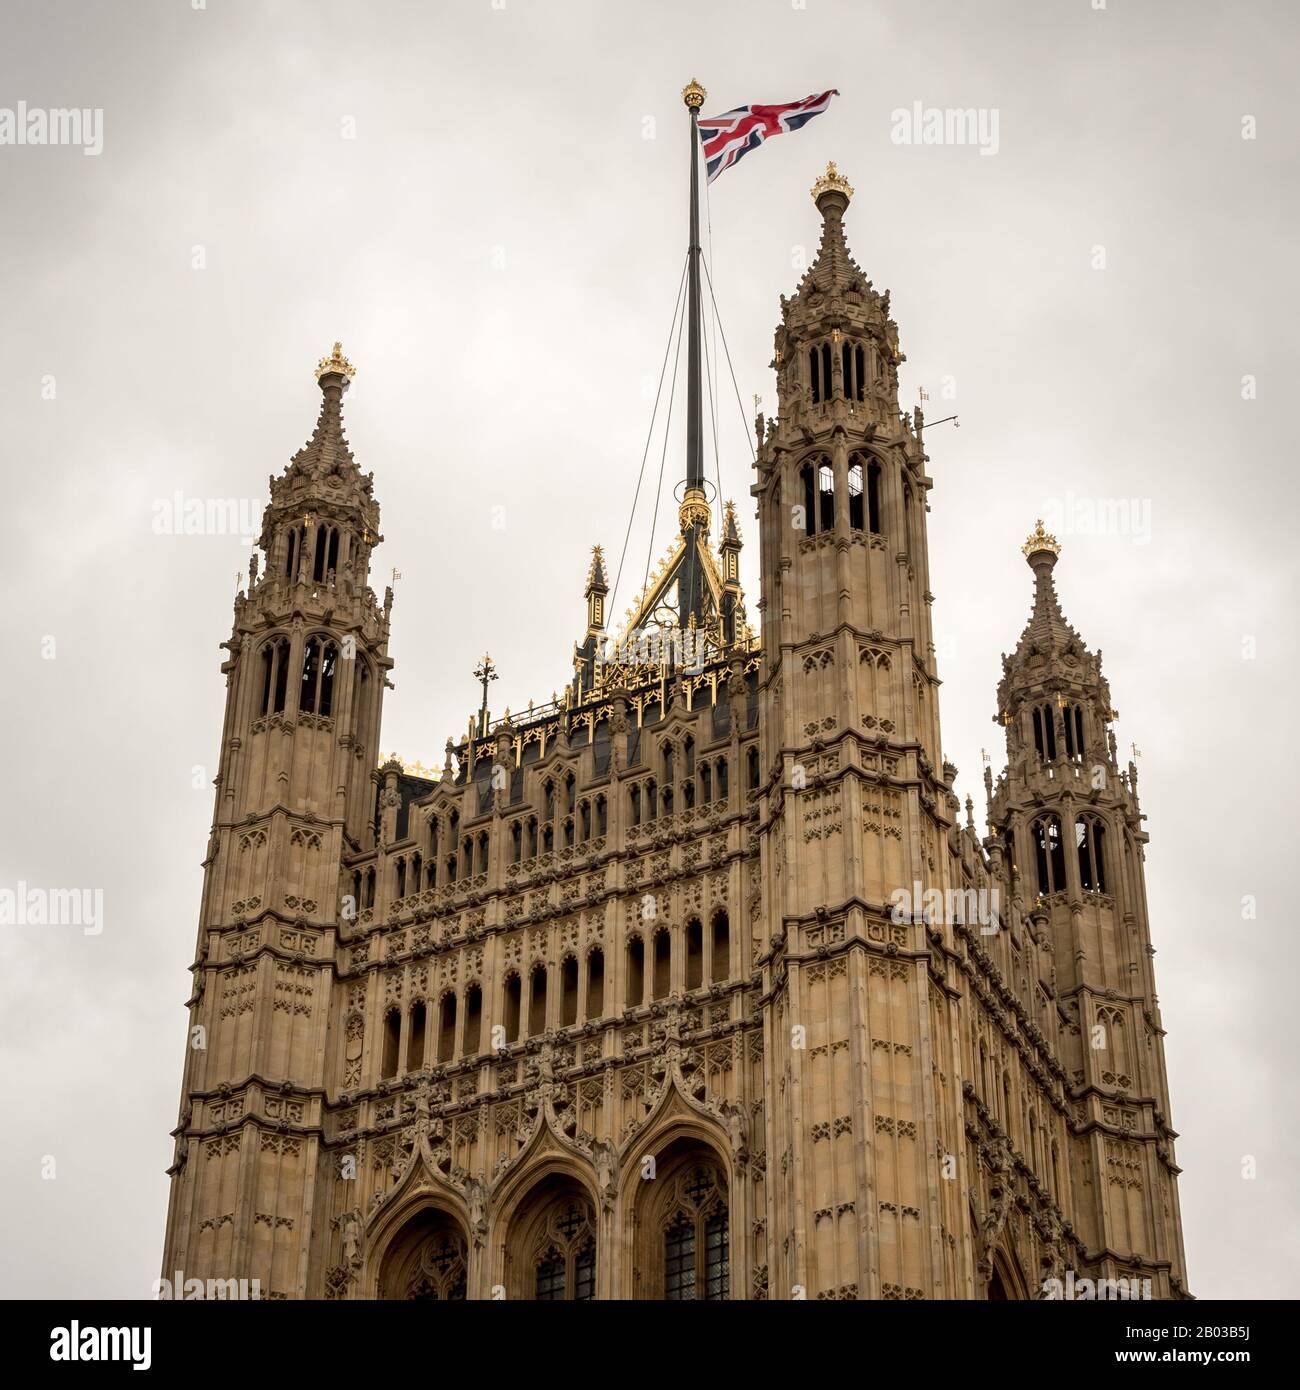 Die Spitze des Victoria Tower, der höchste Punkt des Palace of Westminster, Sitz der britischen Politik und Regierung. Stockfoto